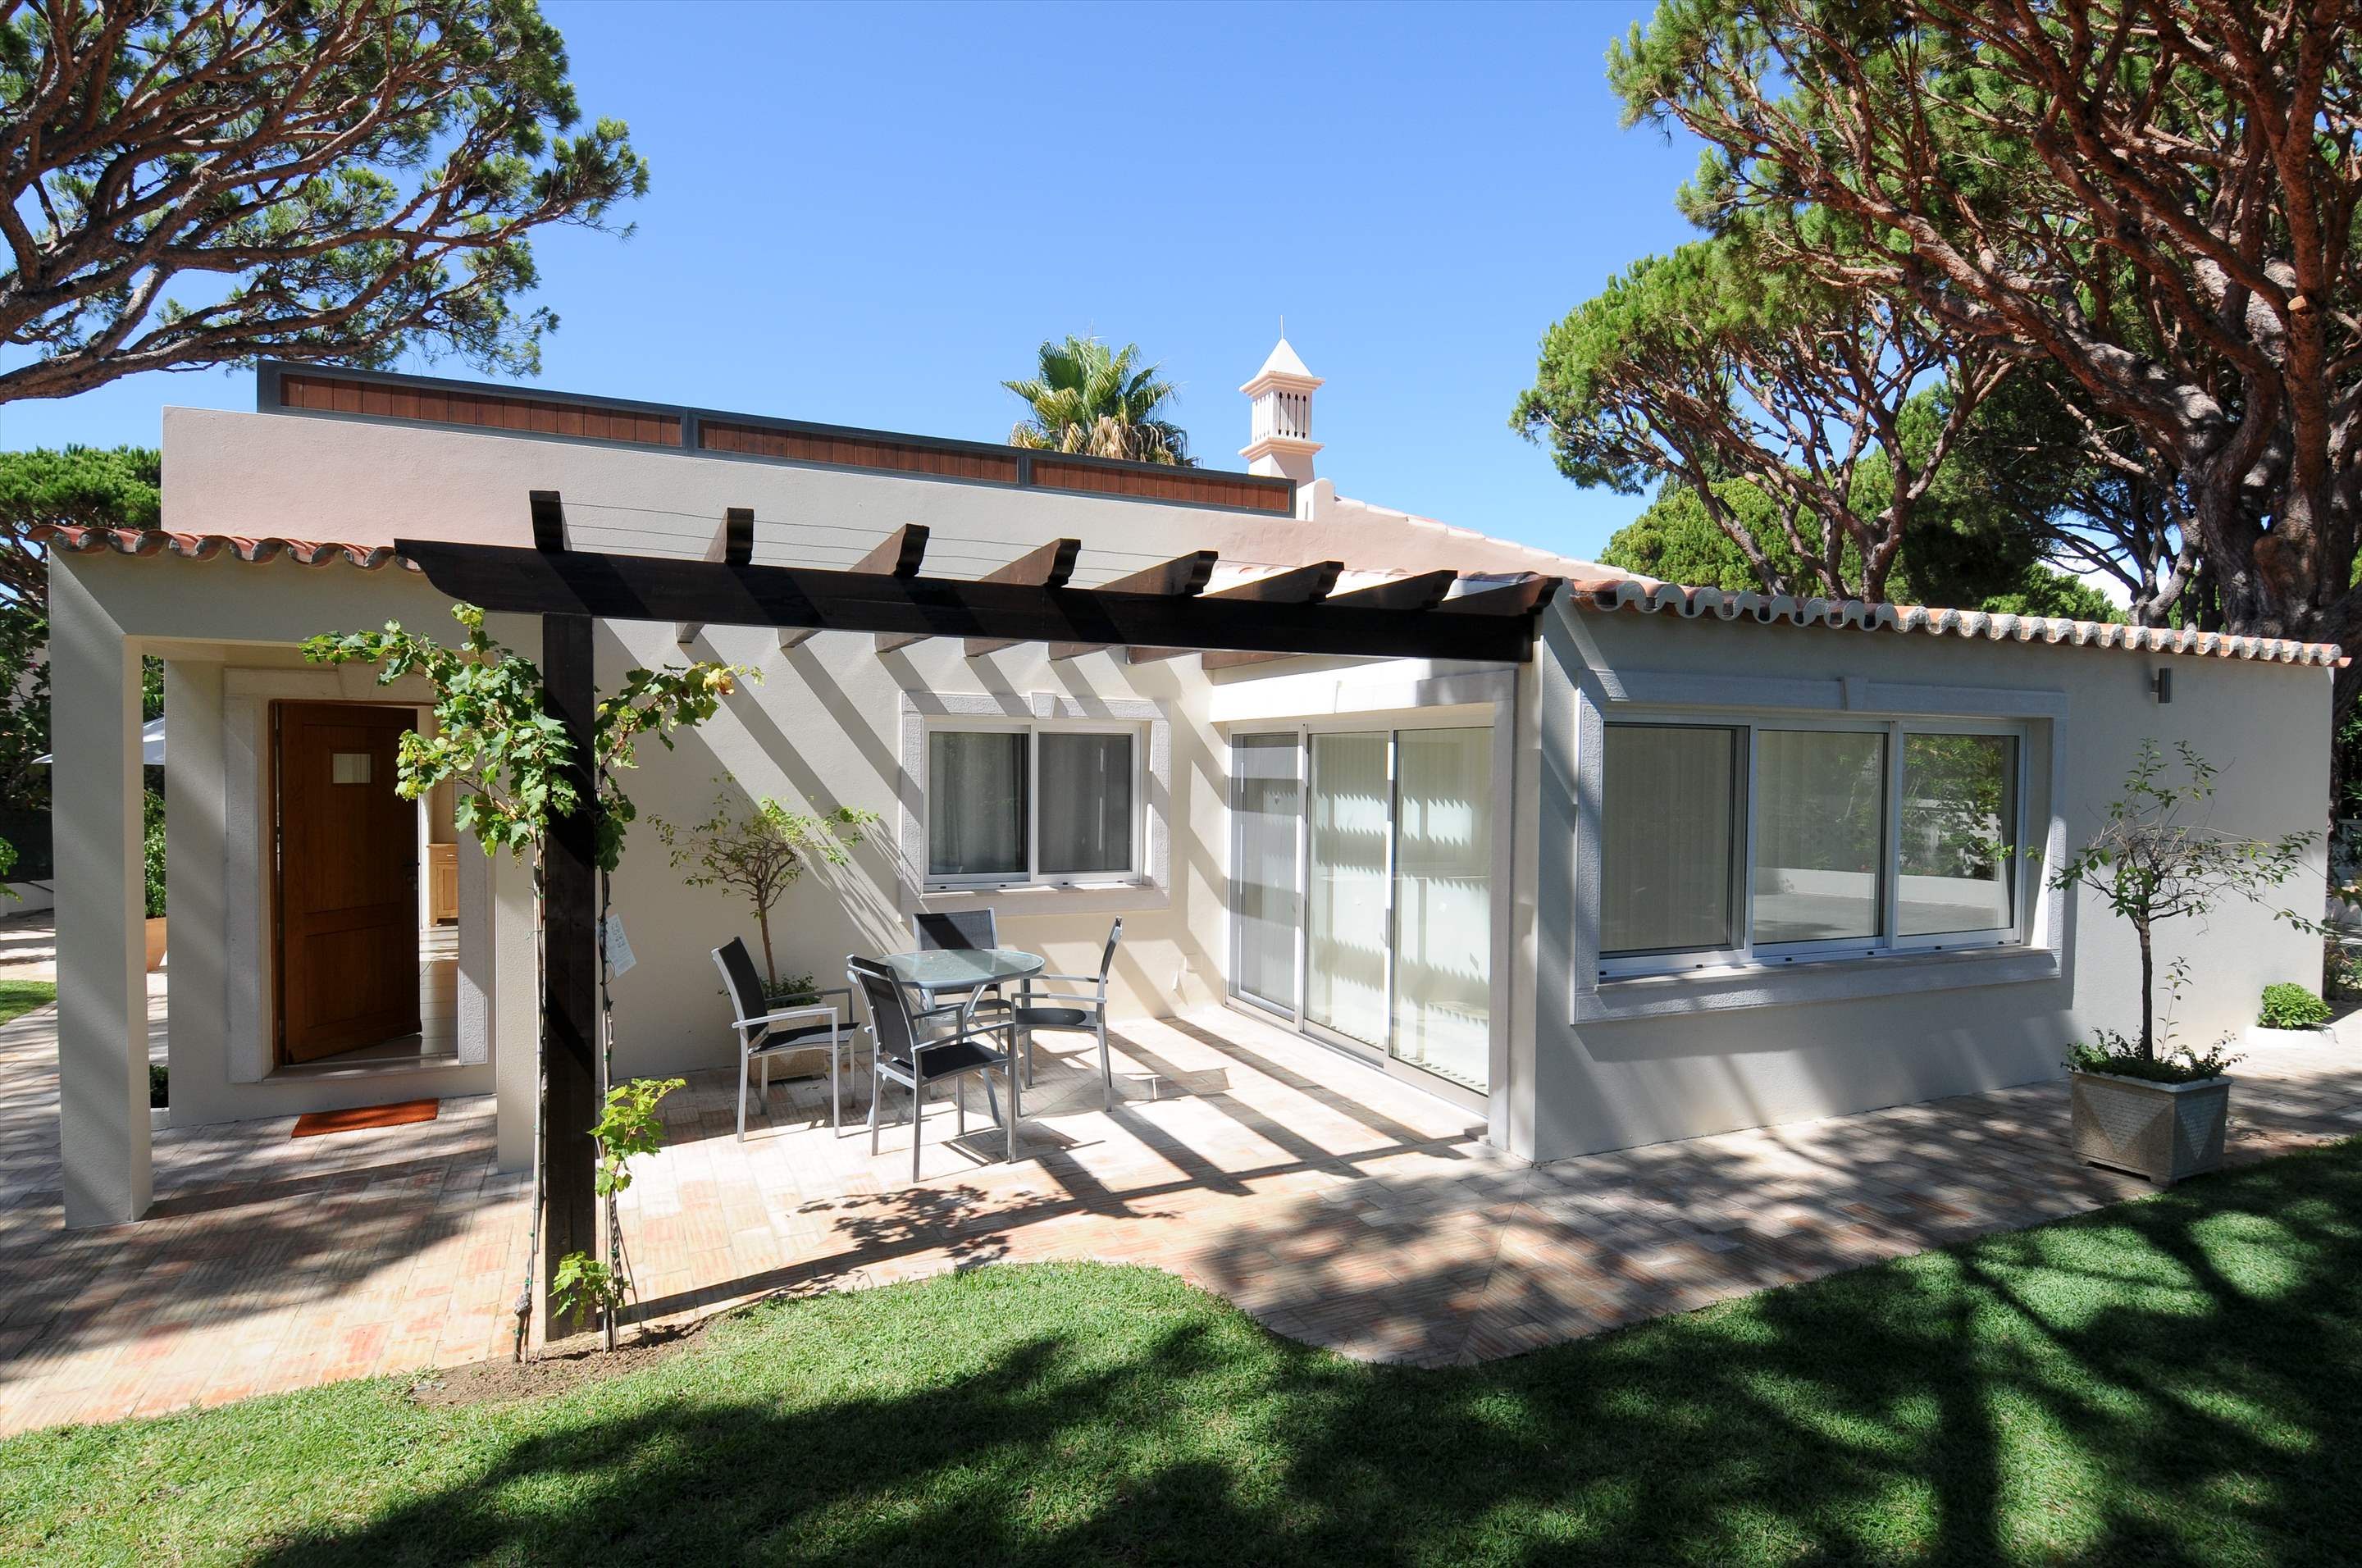 Casa Blanca, 4 Bed Rental, 4 bedroom villa in Vale do Lobo, Algarve Photo #8